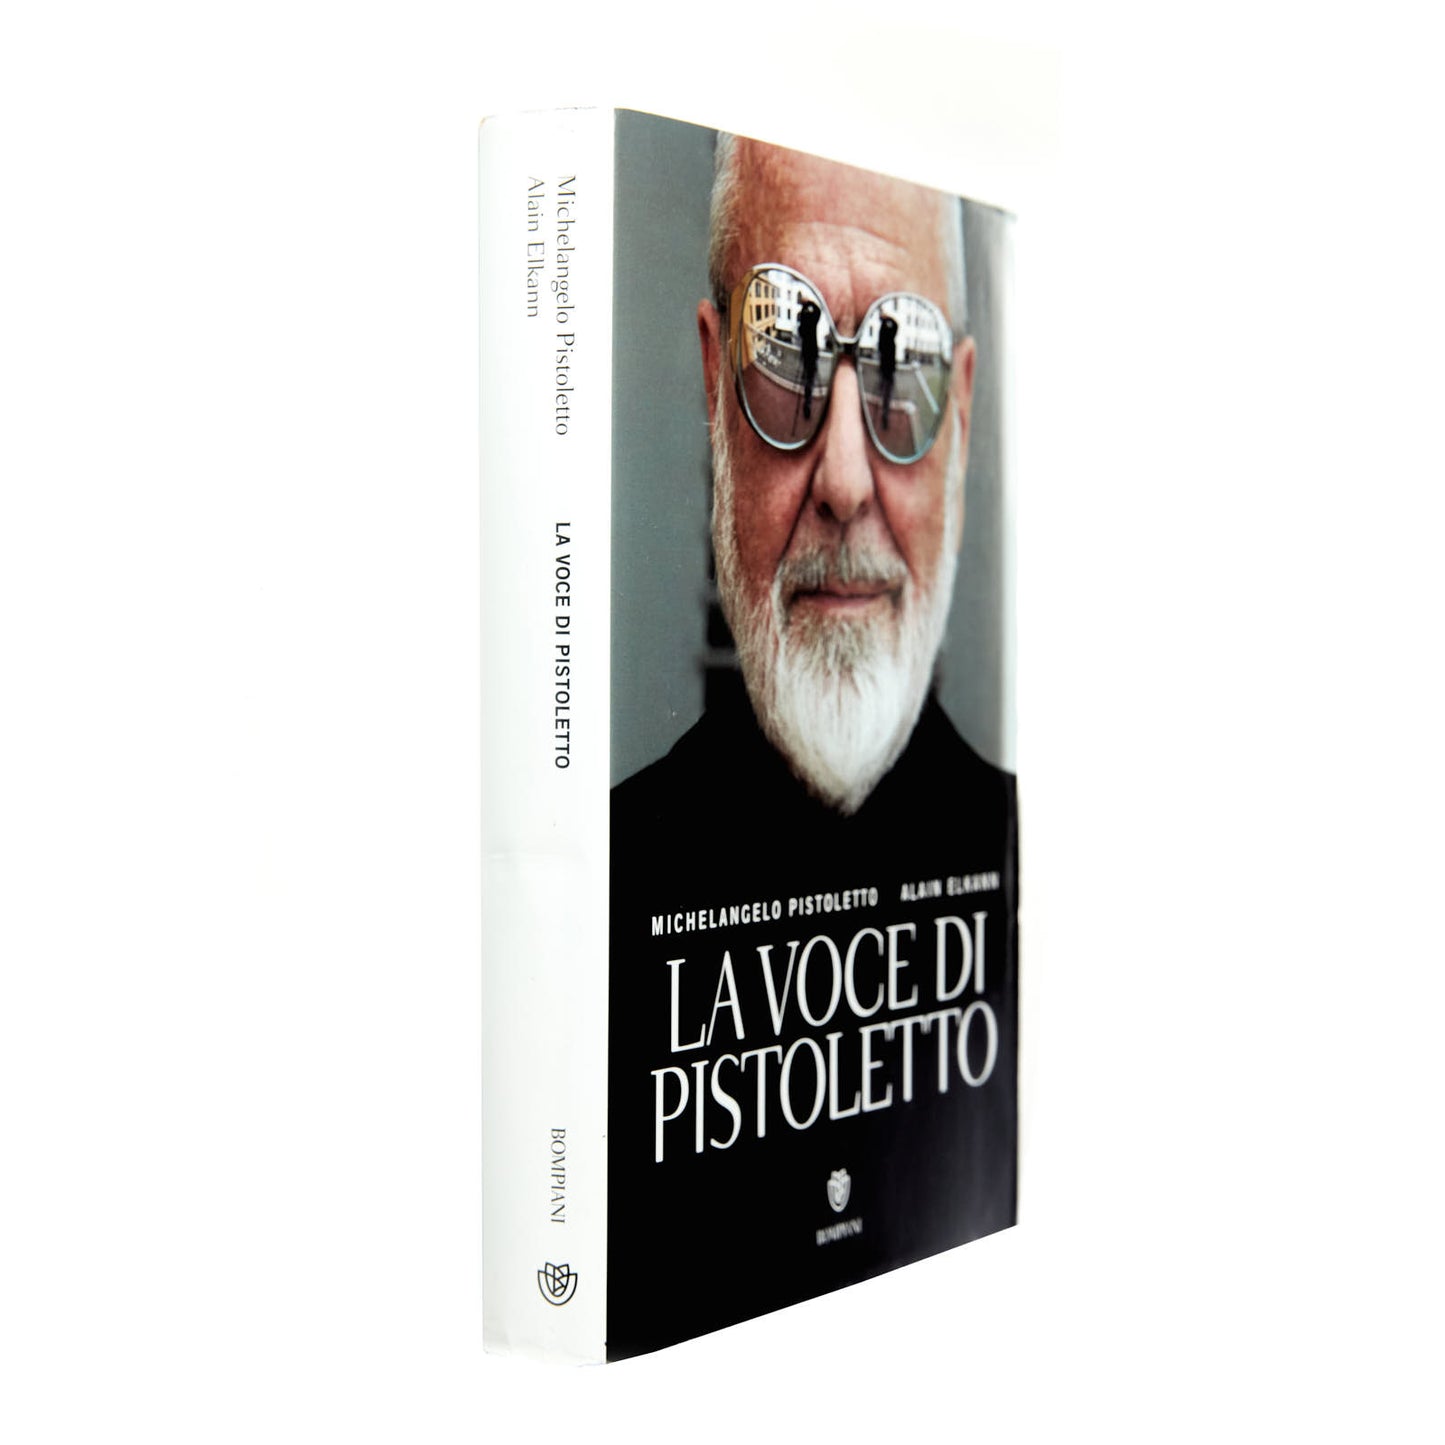 La Voce di Pistoletto (Michelangelo Pistoletto & Alain Elkann)